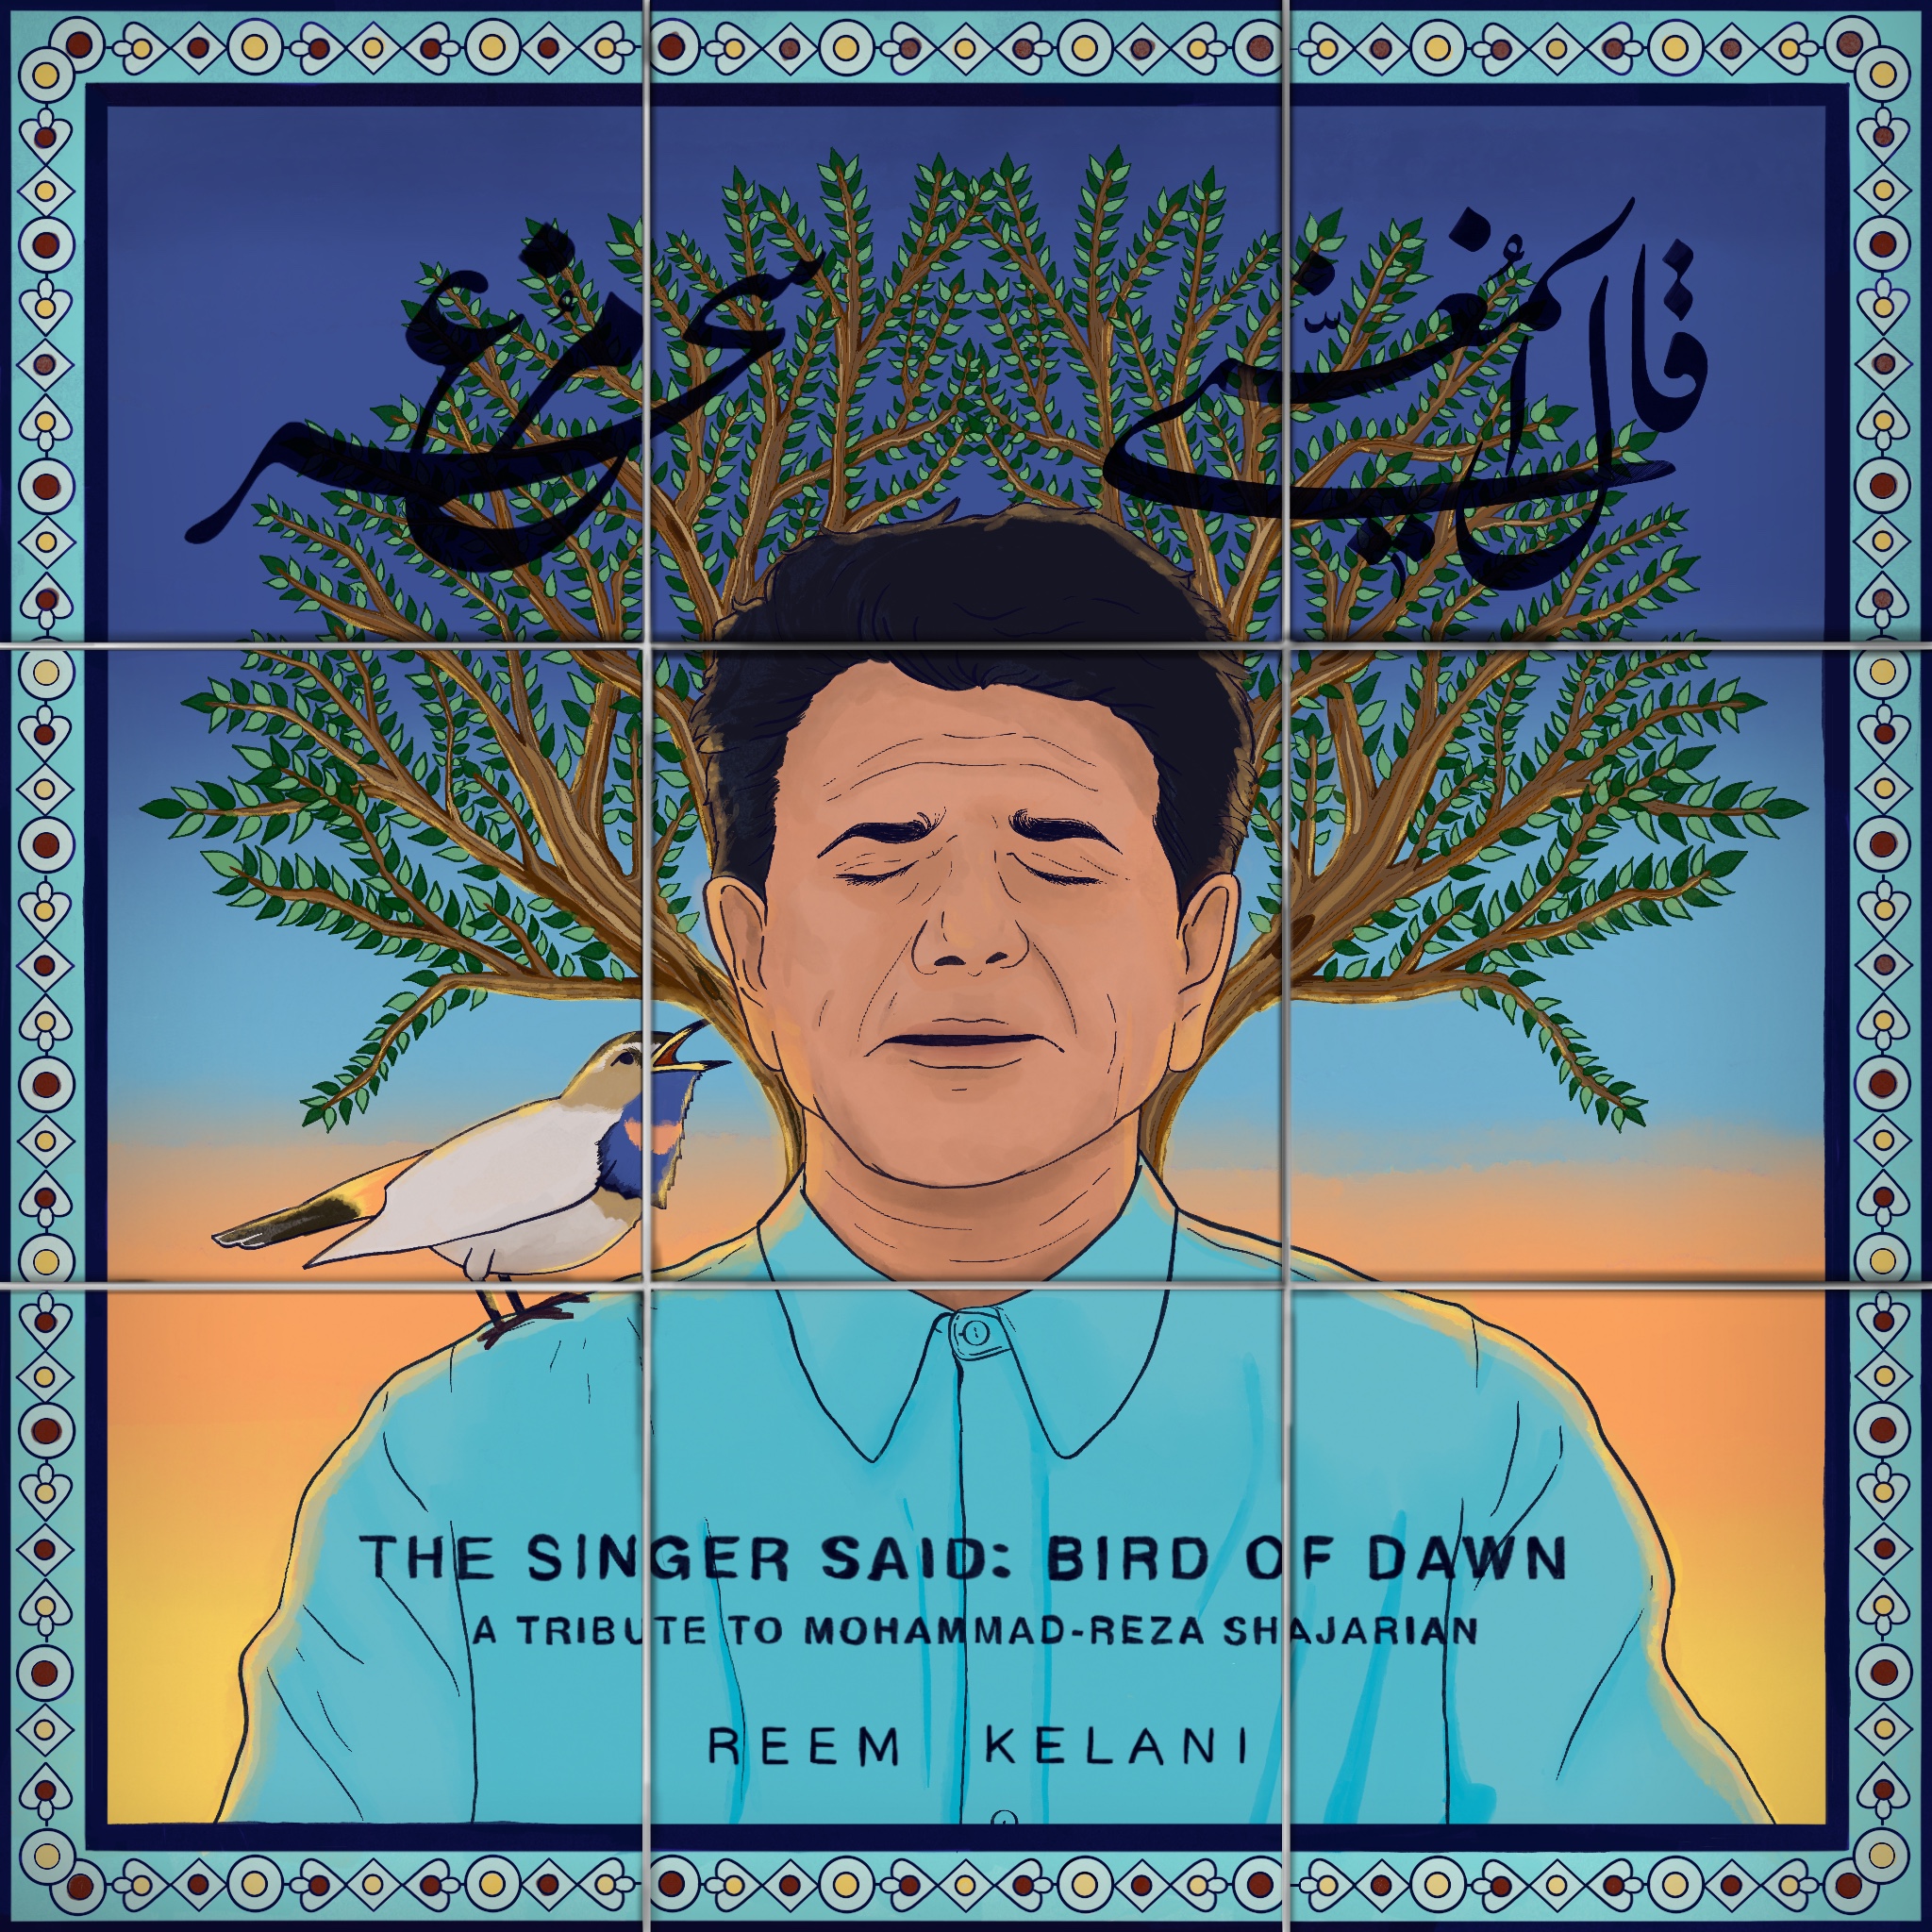 Cover of Reem Kelani's two-song EP "The Singer Said: Bird of Dawn" (source: reemkelani.bandcamp.com)